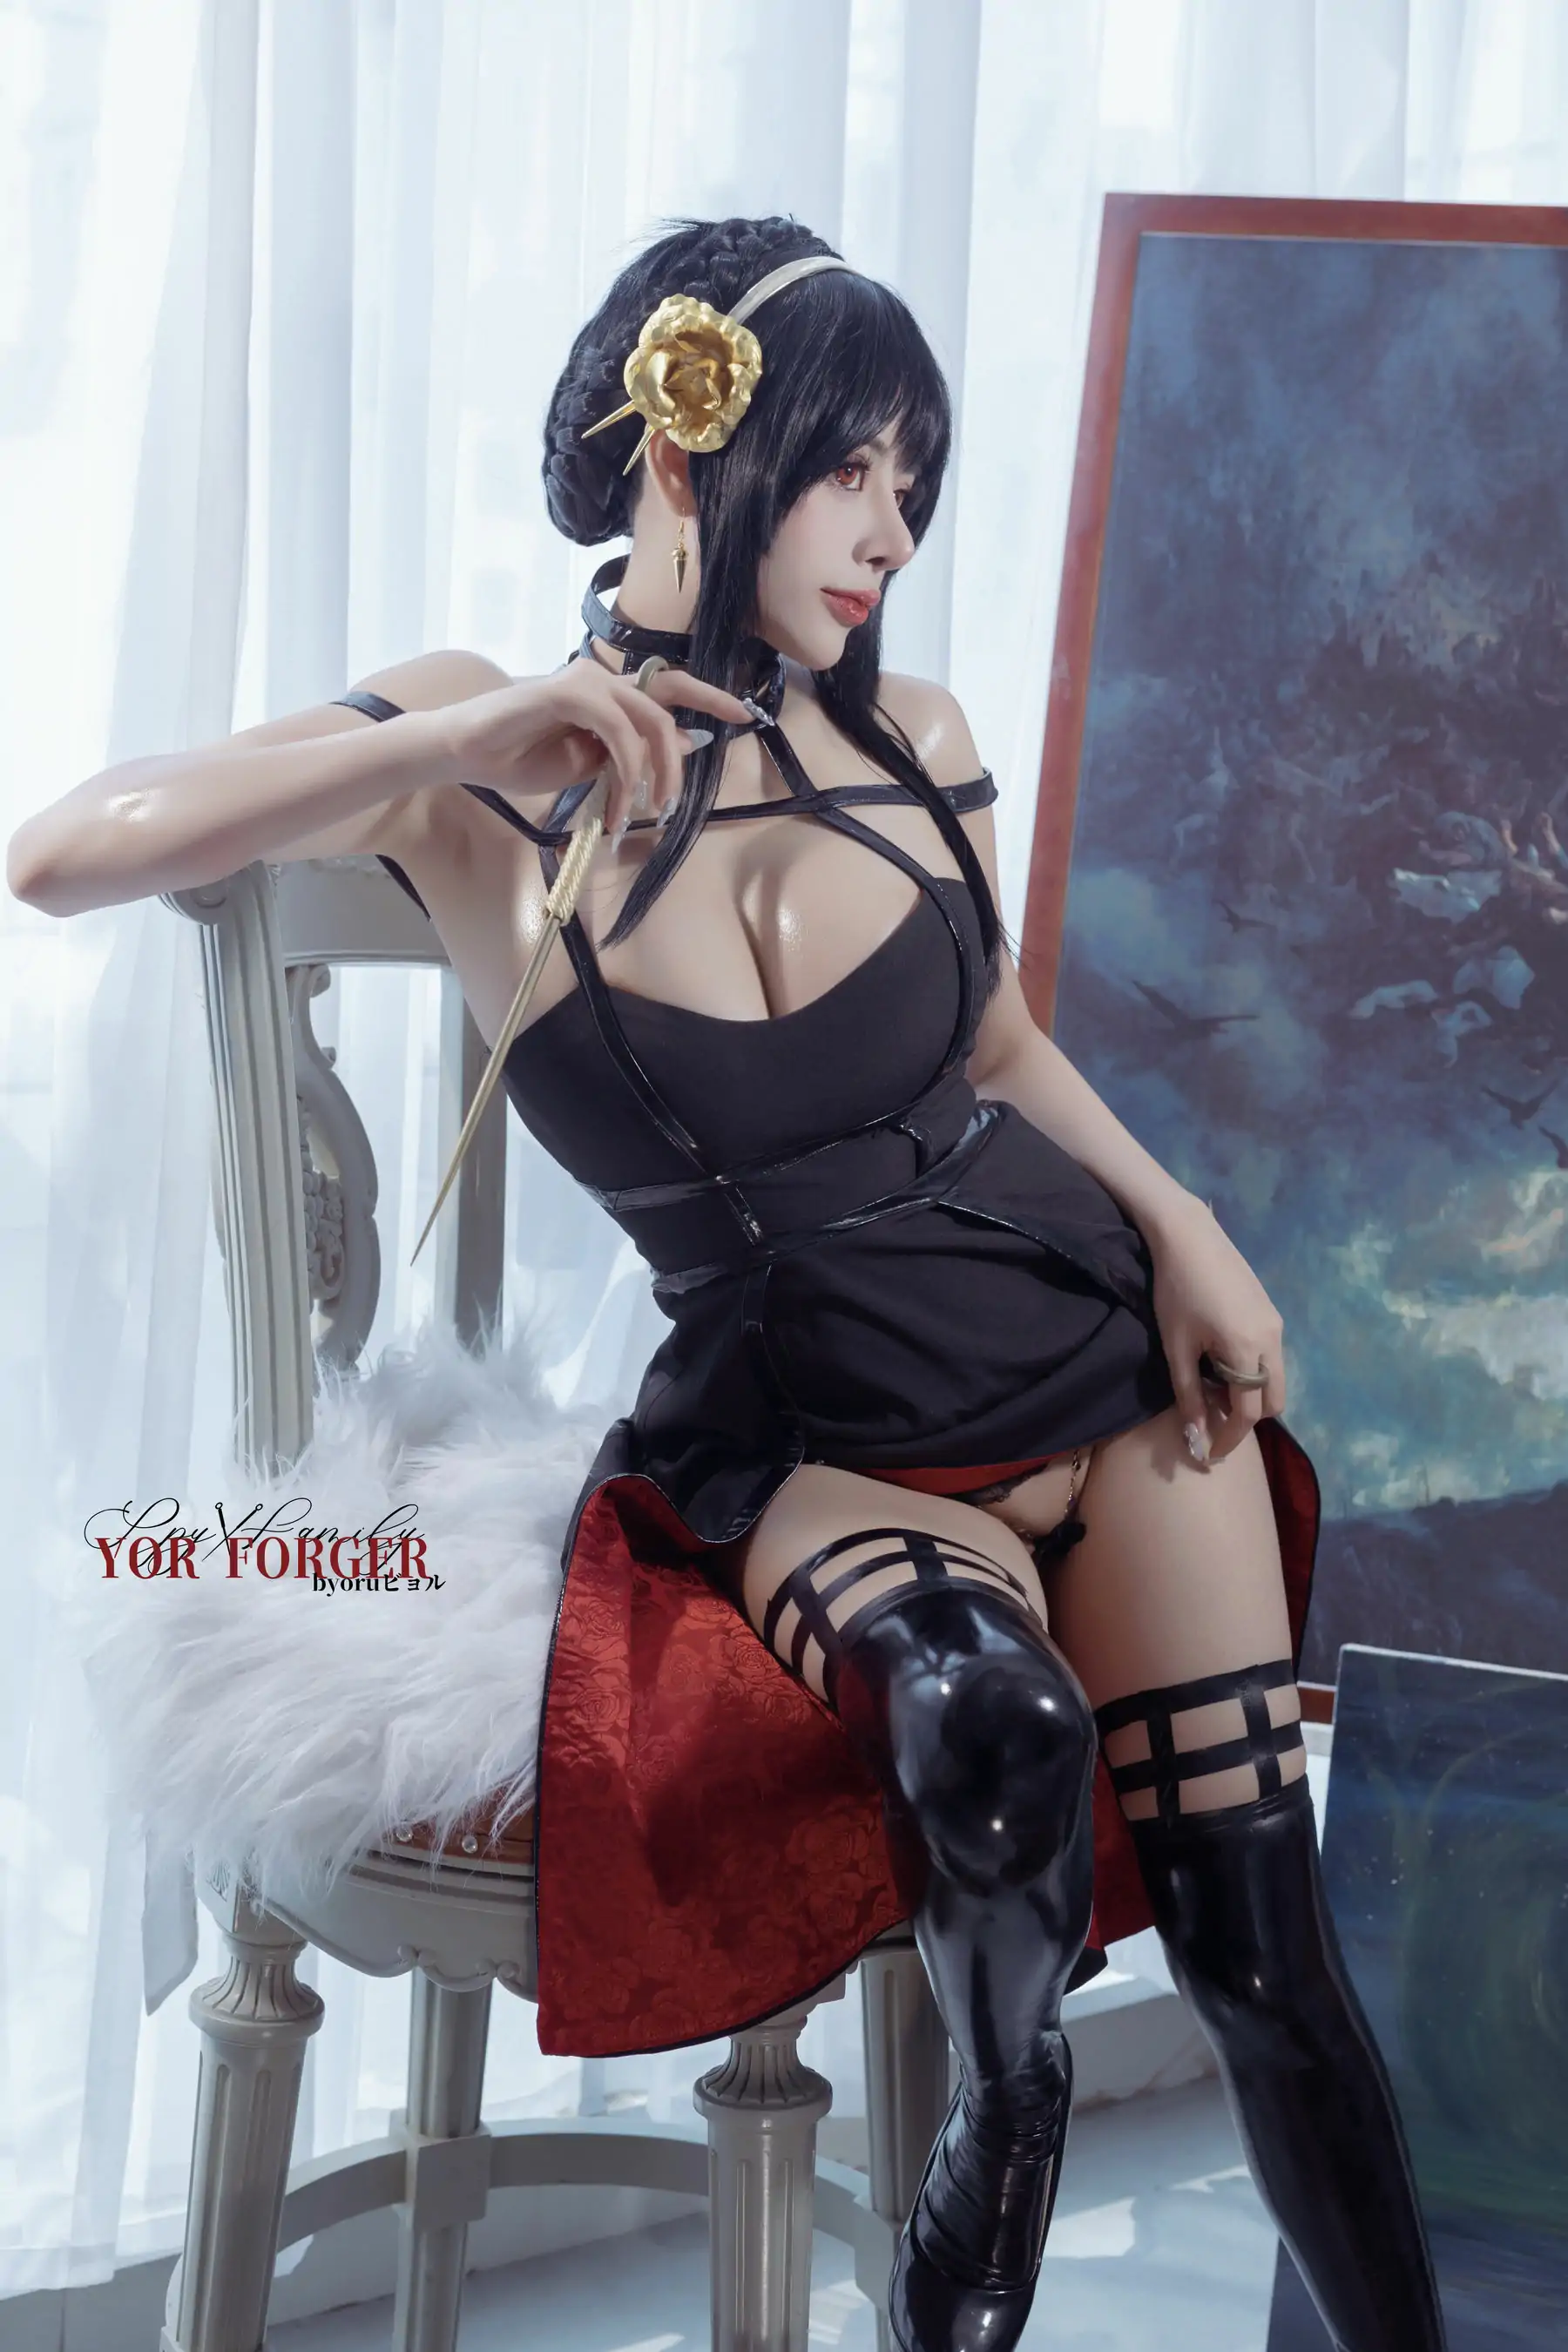 日本性感萝莉Byoru - Yor thorn princess